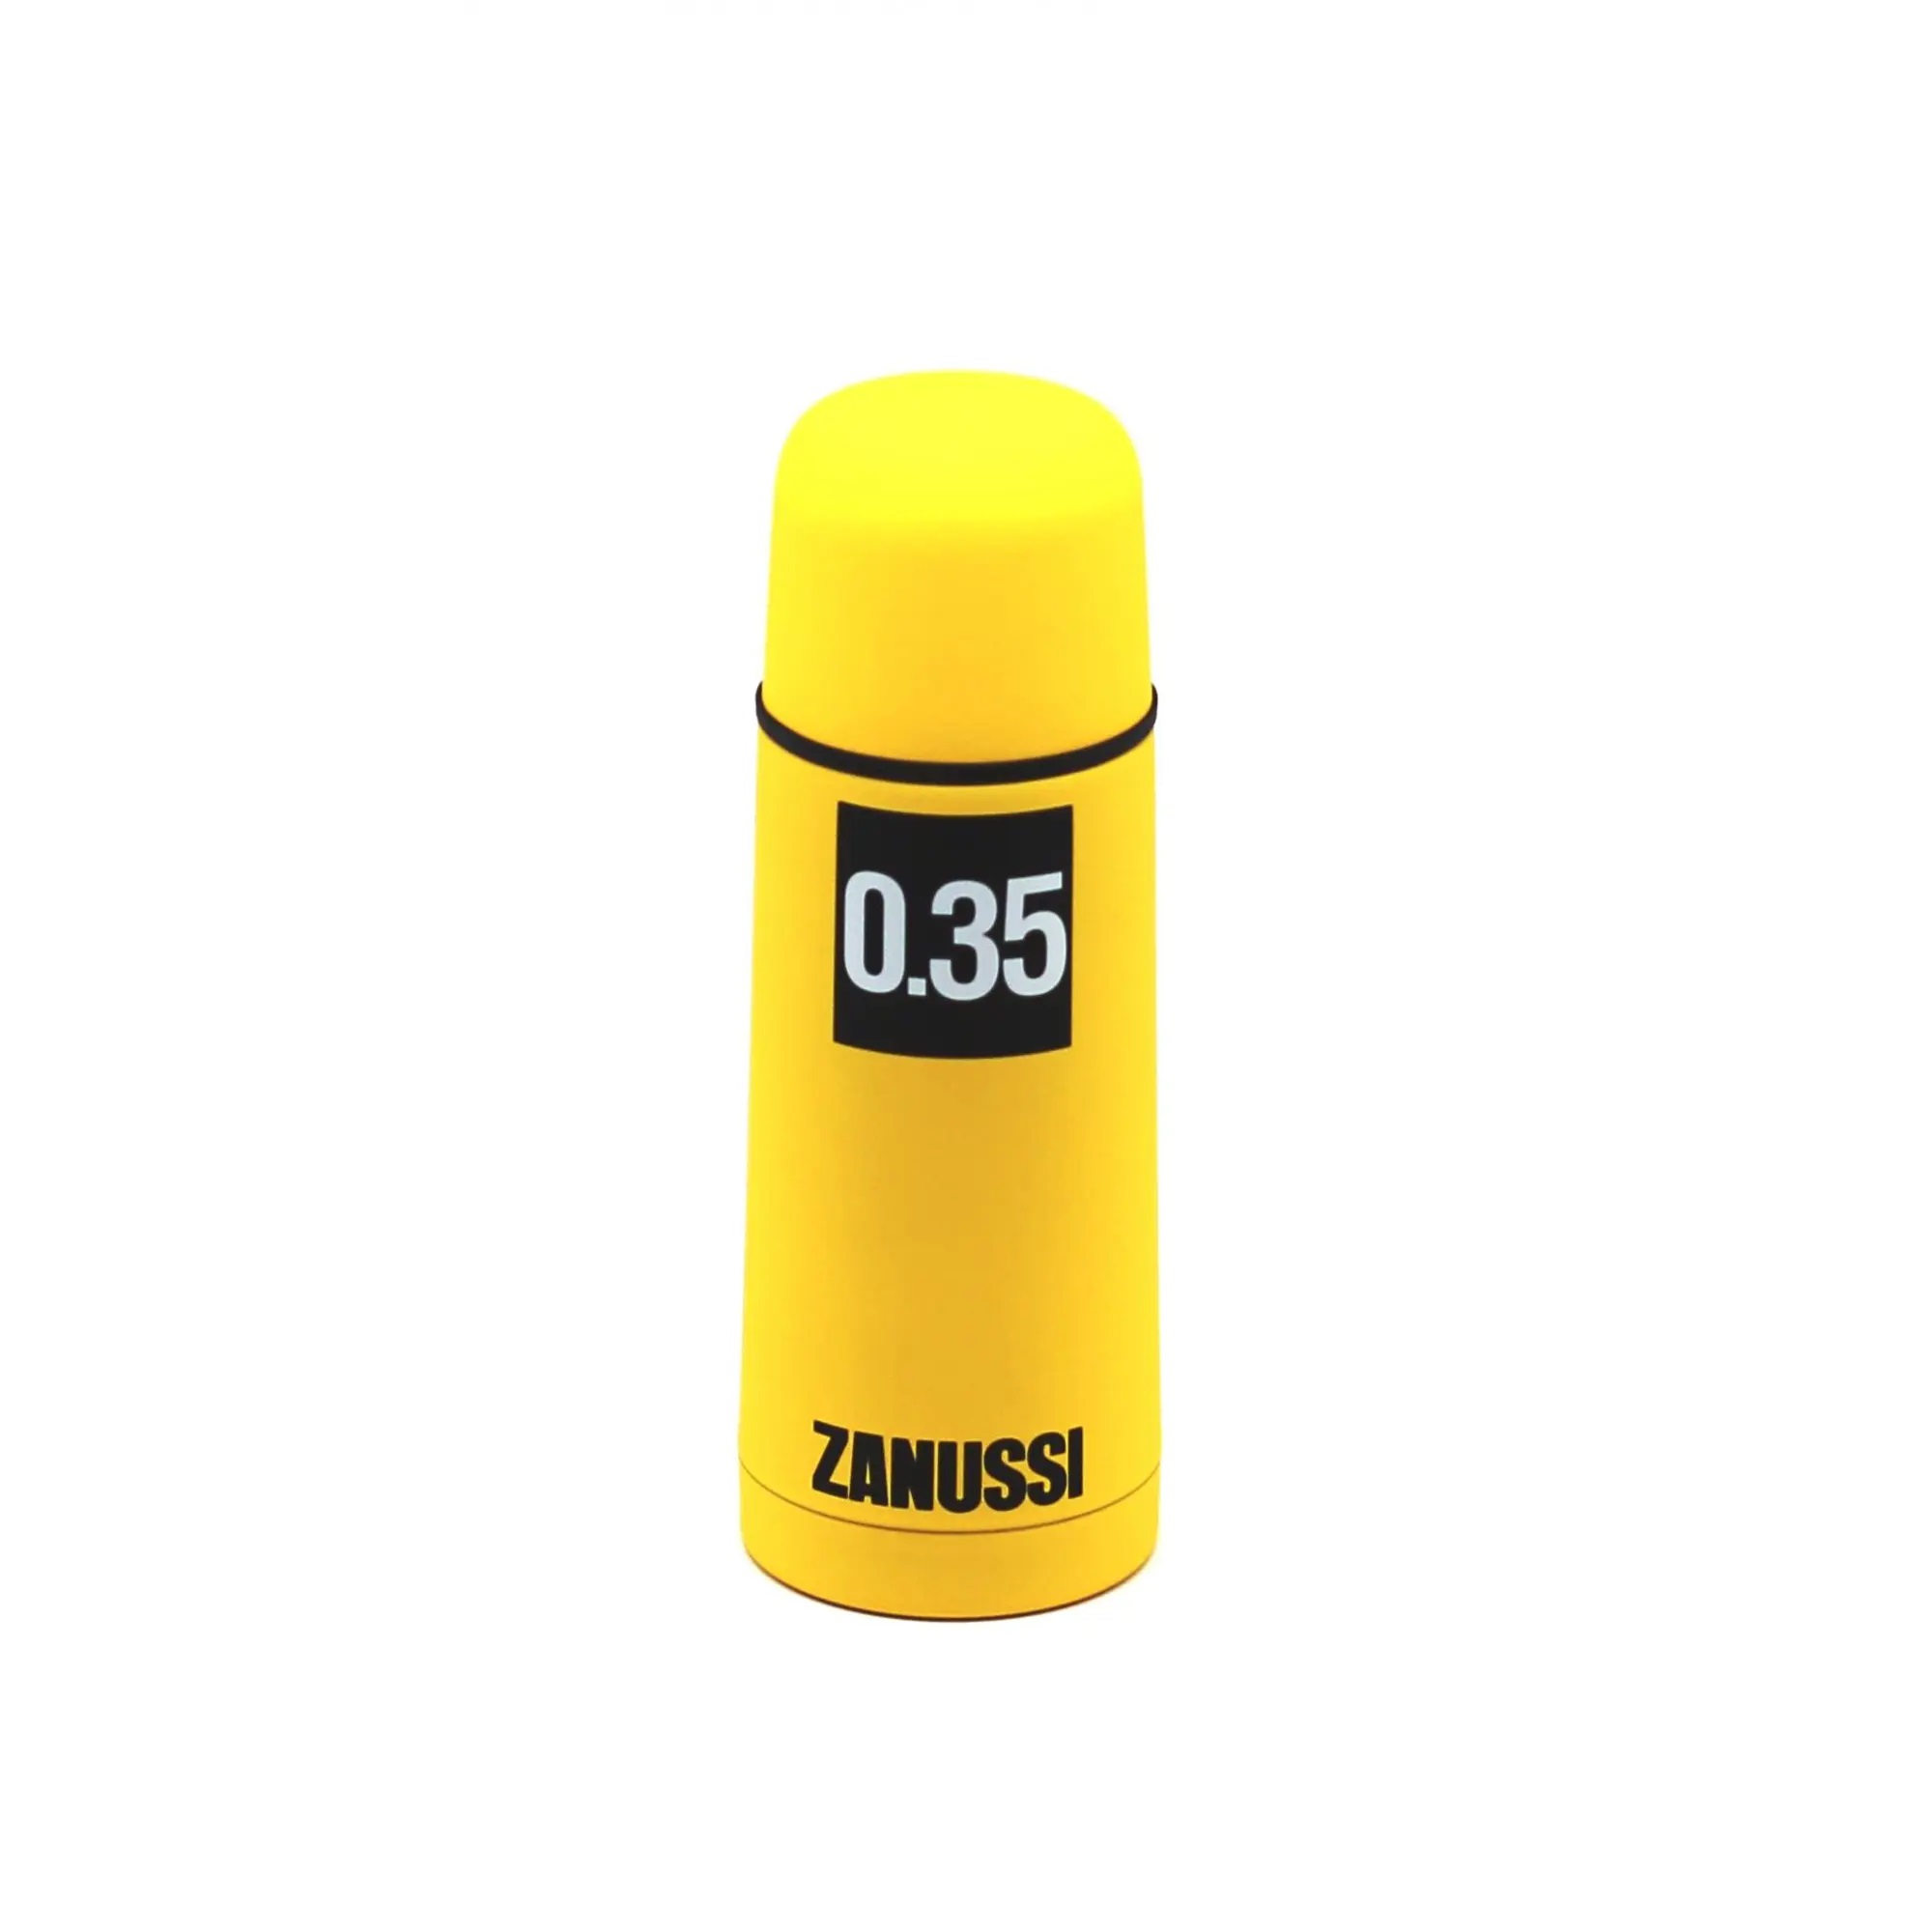 Термос Zanussi желтый 035 л (ZVF11221CF) кувшин термос 1 5 л желтый livorno zanussi